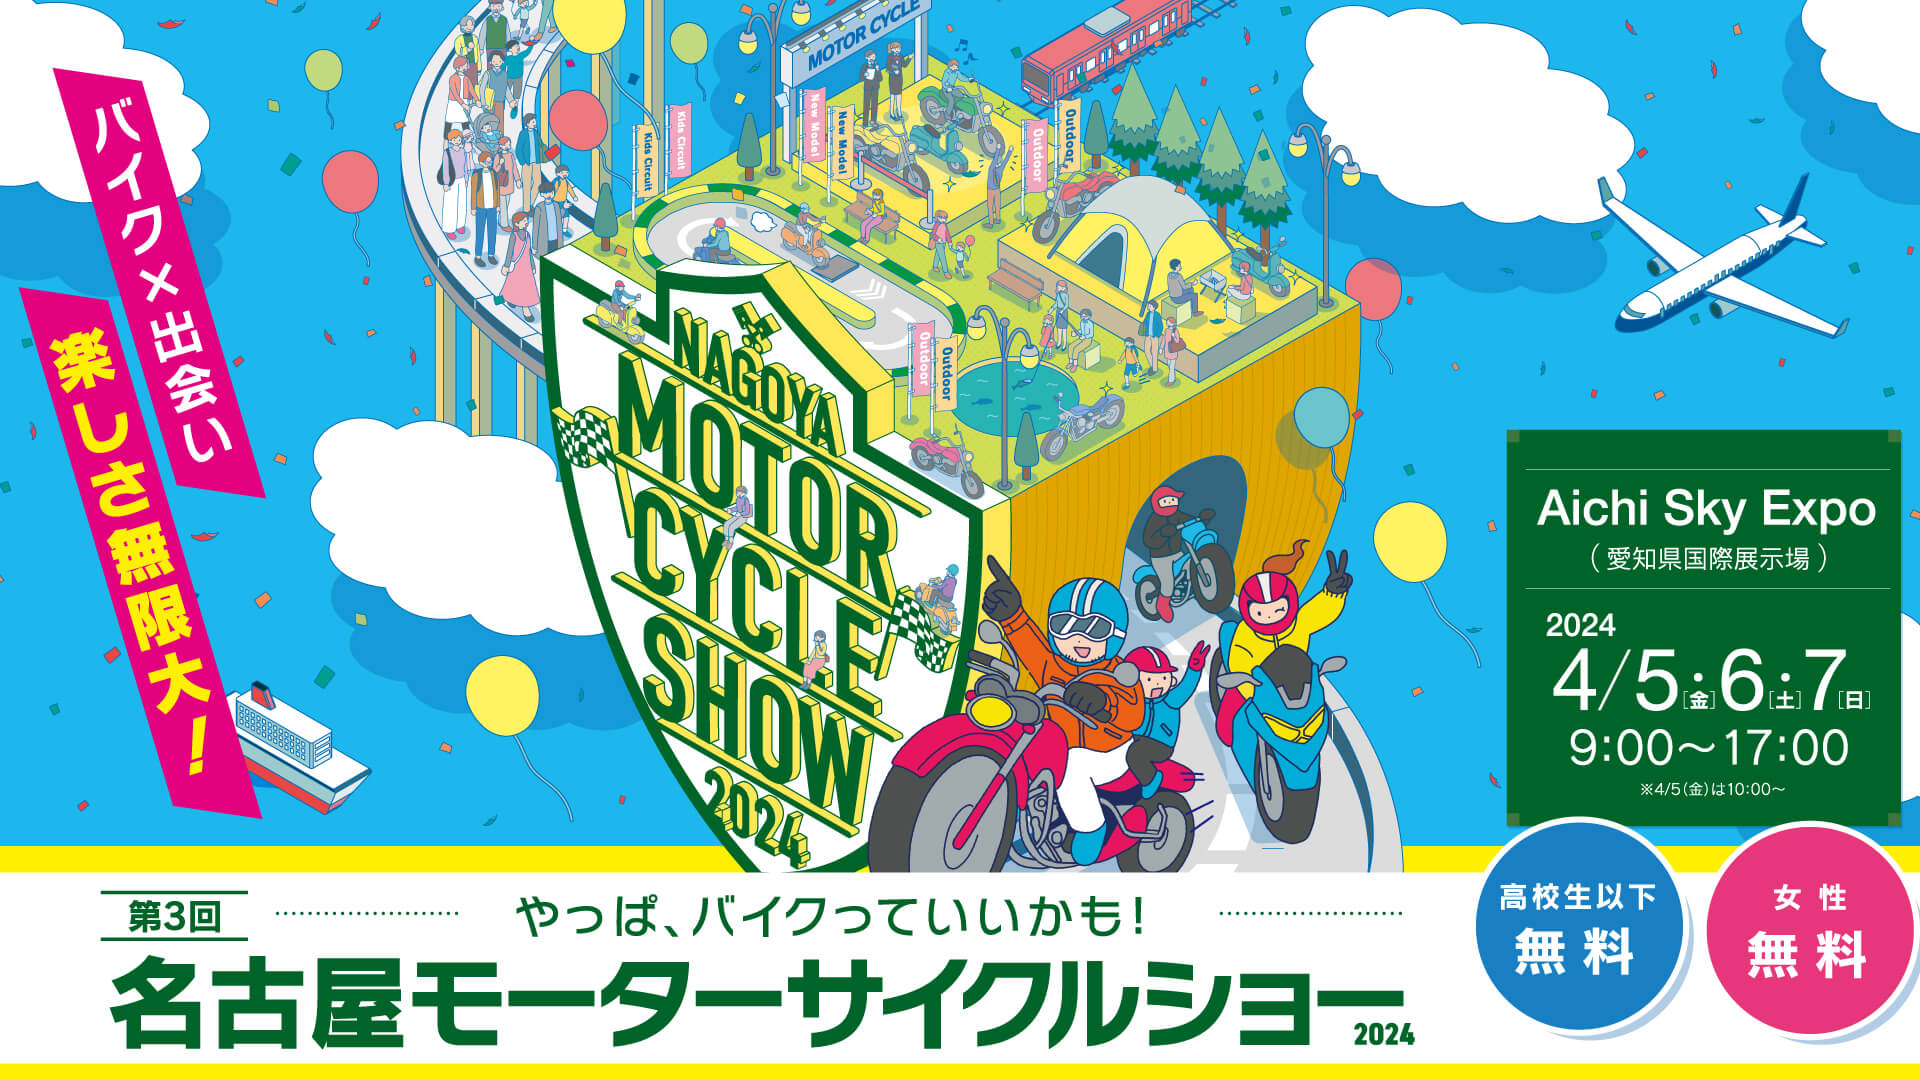 【ご案内】名古屋モーターサイクルショーへの出展につきまして